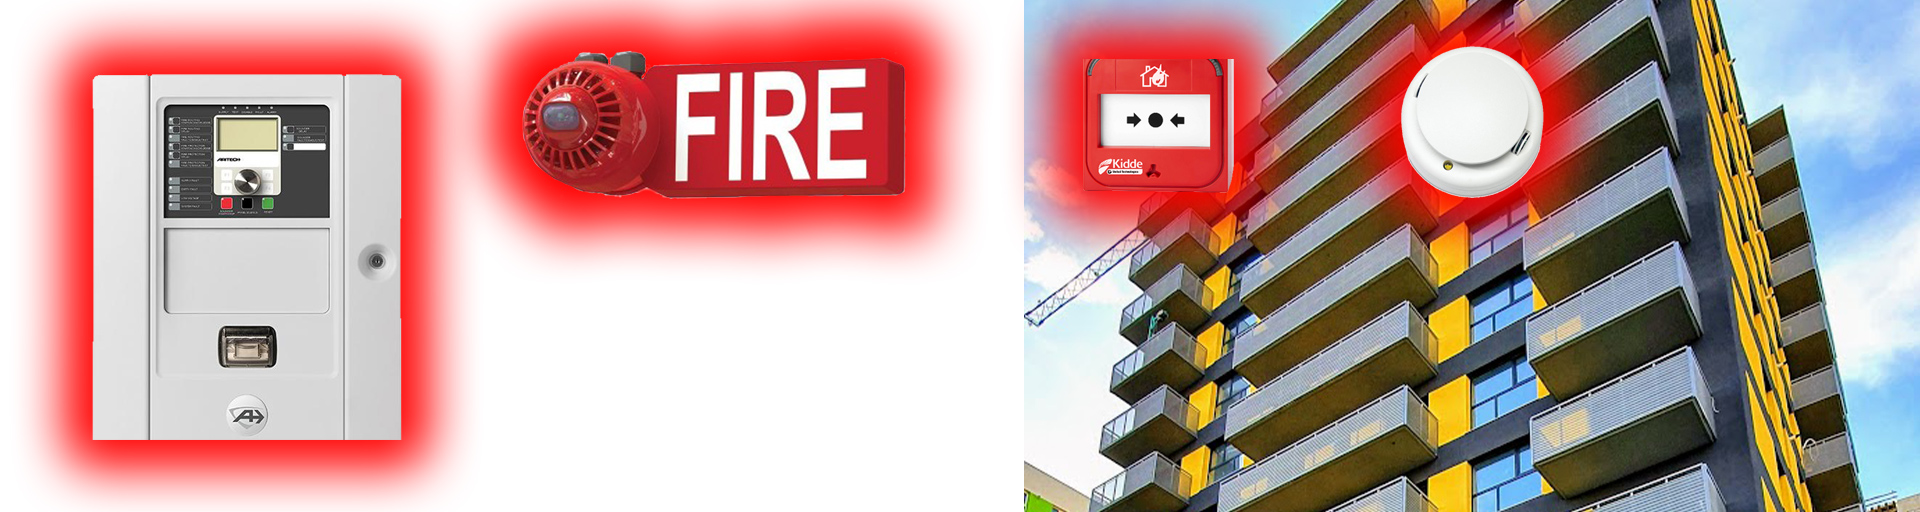 Sisteme avansate pentru siguranta la incendiu